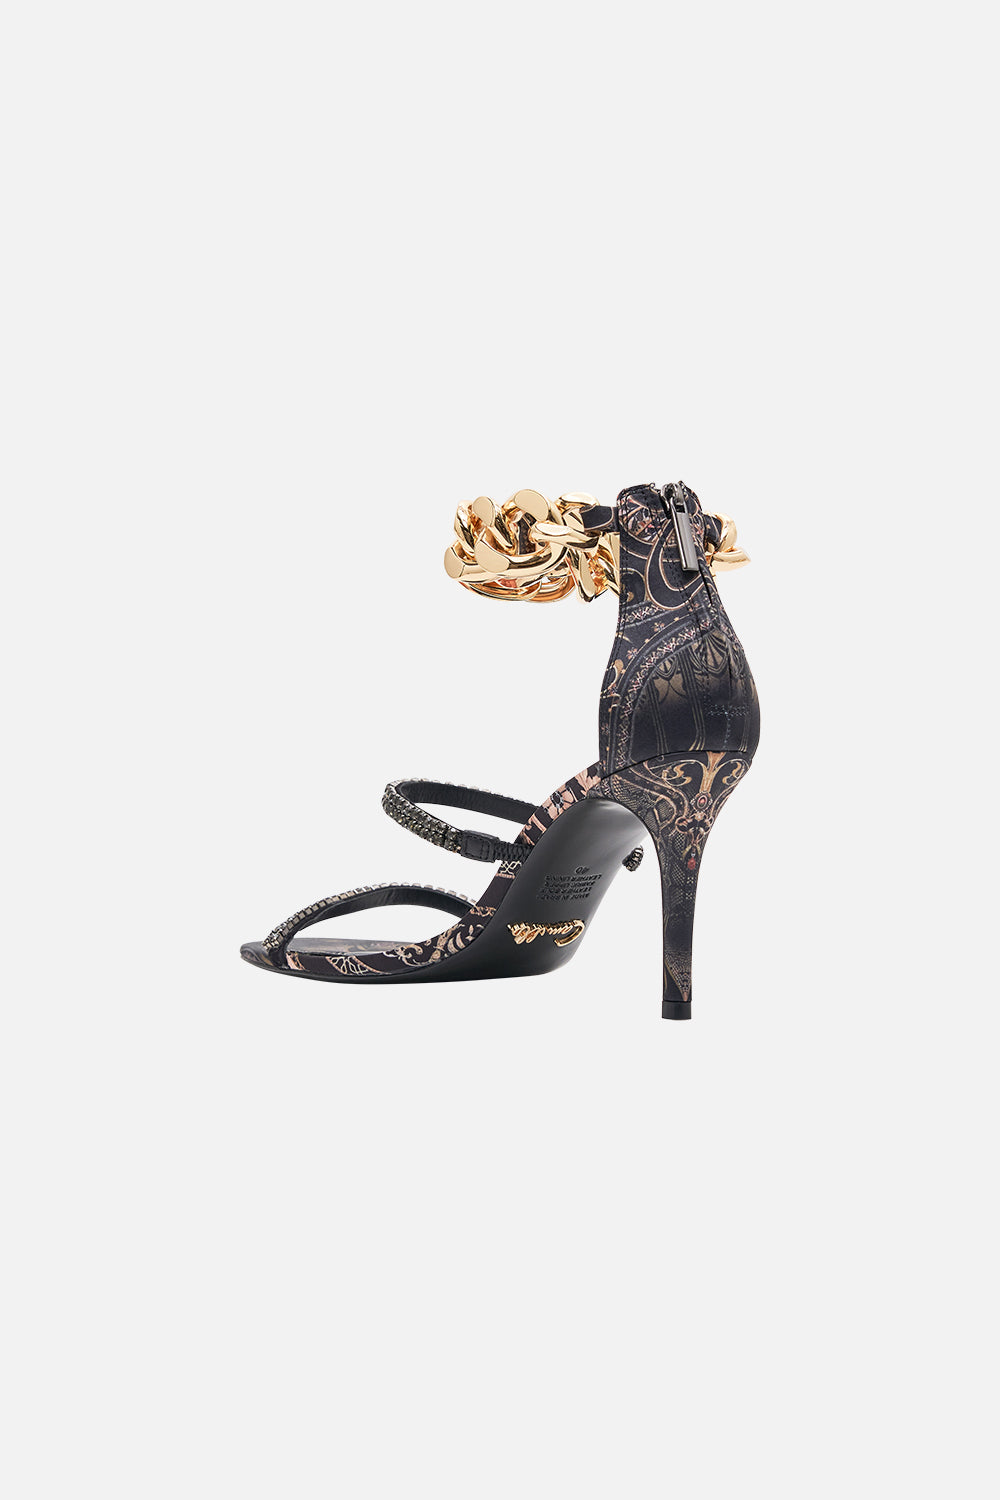 CAMILLA heels in Nouveau Noir print